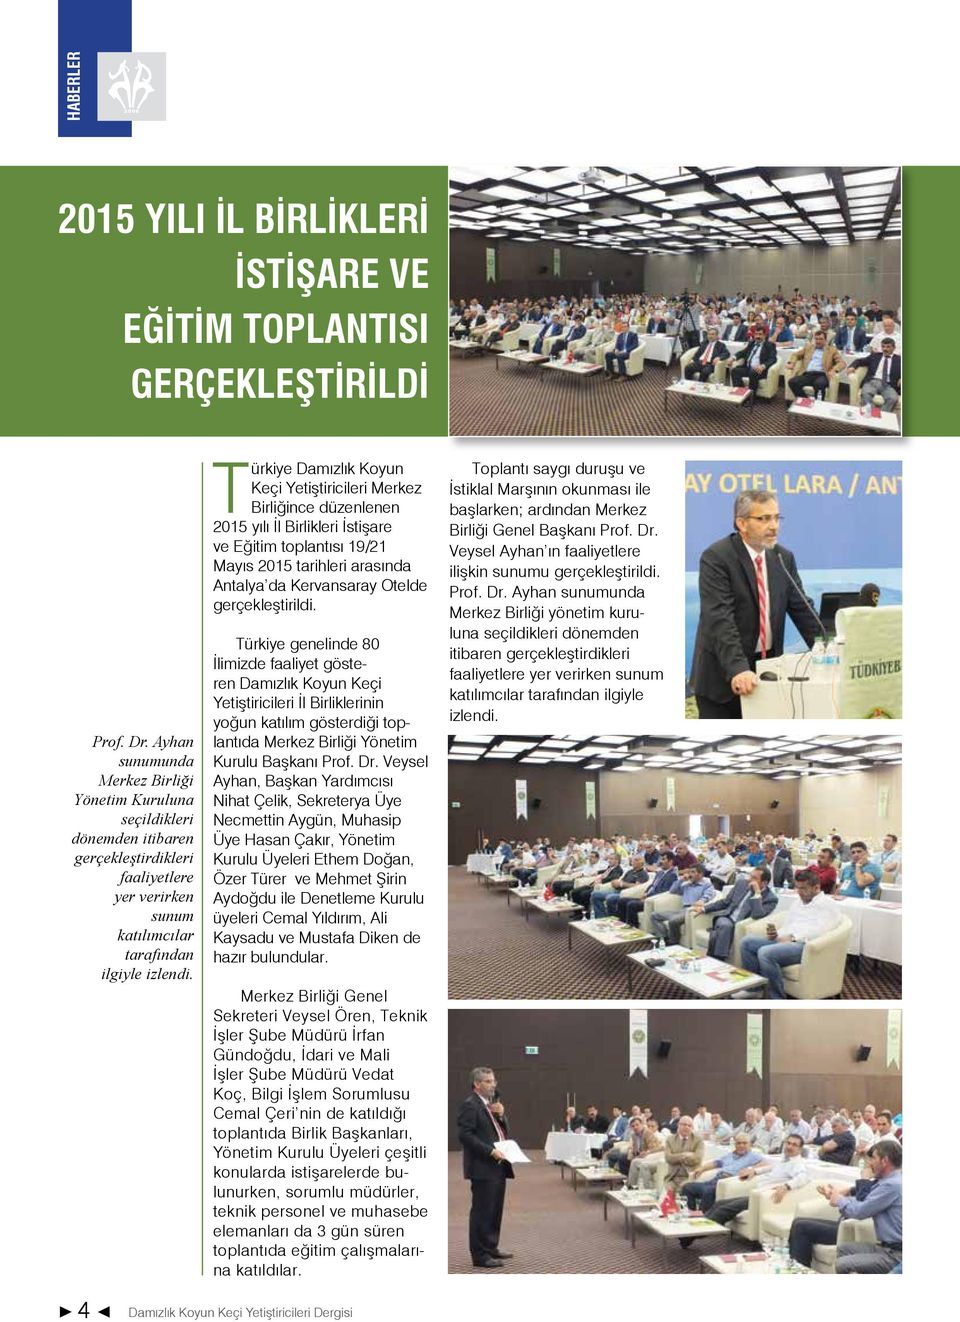 Türkiye Damızlık Koyun Keçi Yetiştiricileri Merkez Birliğince düzenlenen 2015 yılı İl Birlikleri İstişare ve Eğitim toplantısı 19/21 Mayıs 2015 tarihleri arasında Antalya da Kervansaray Otelde